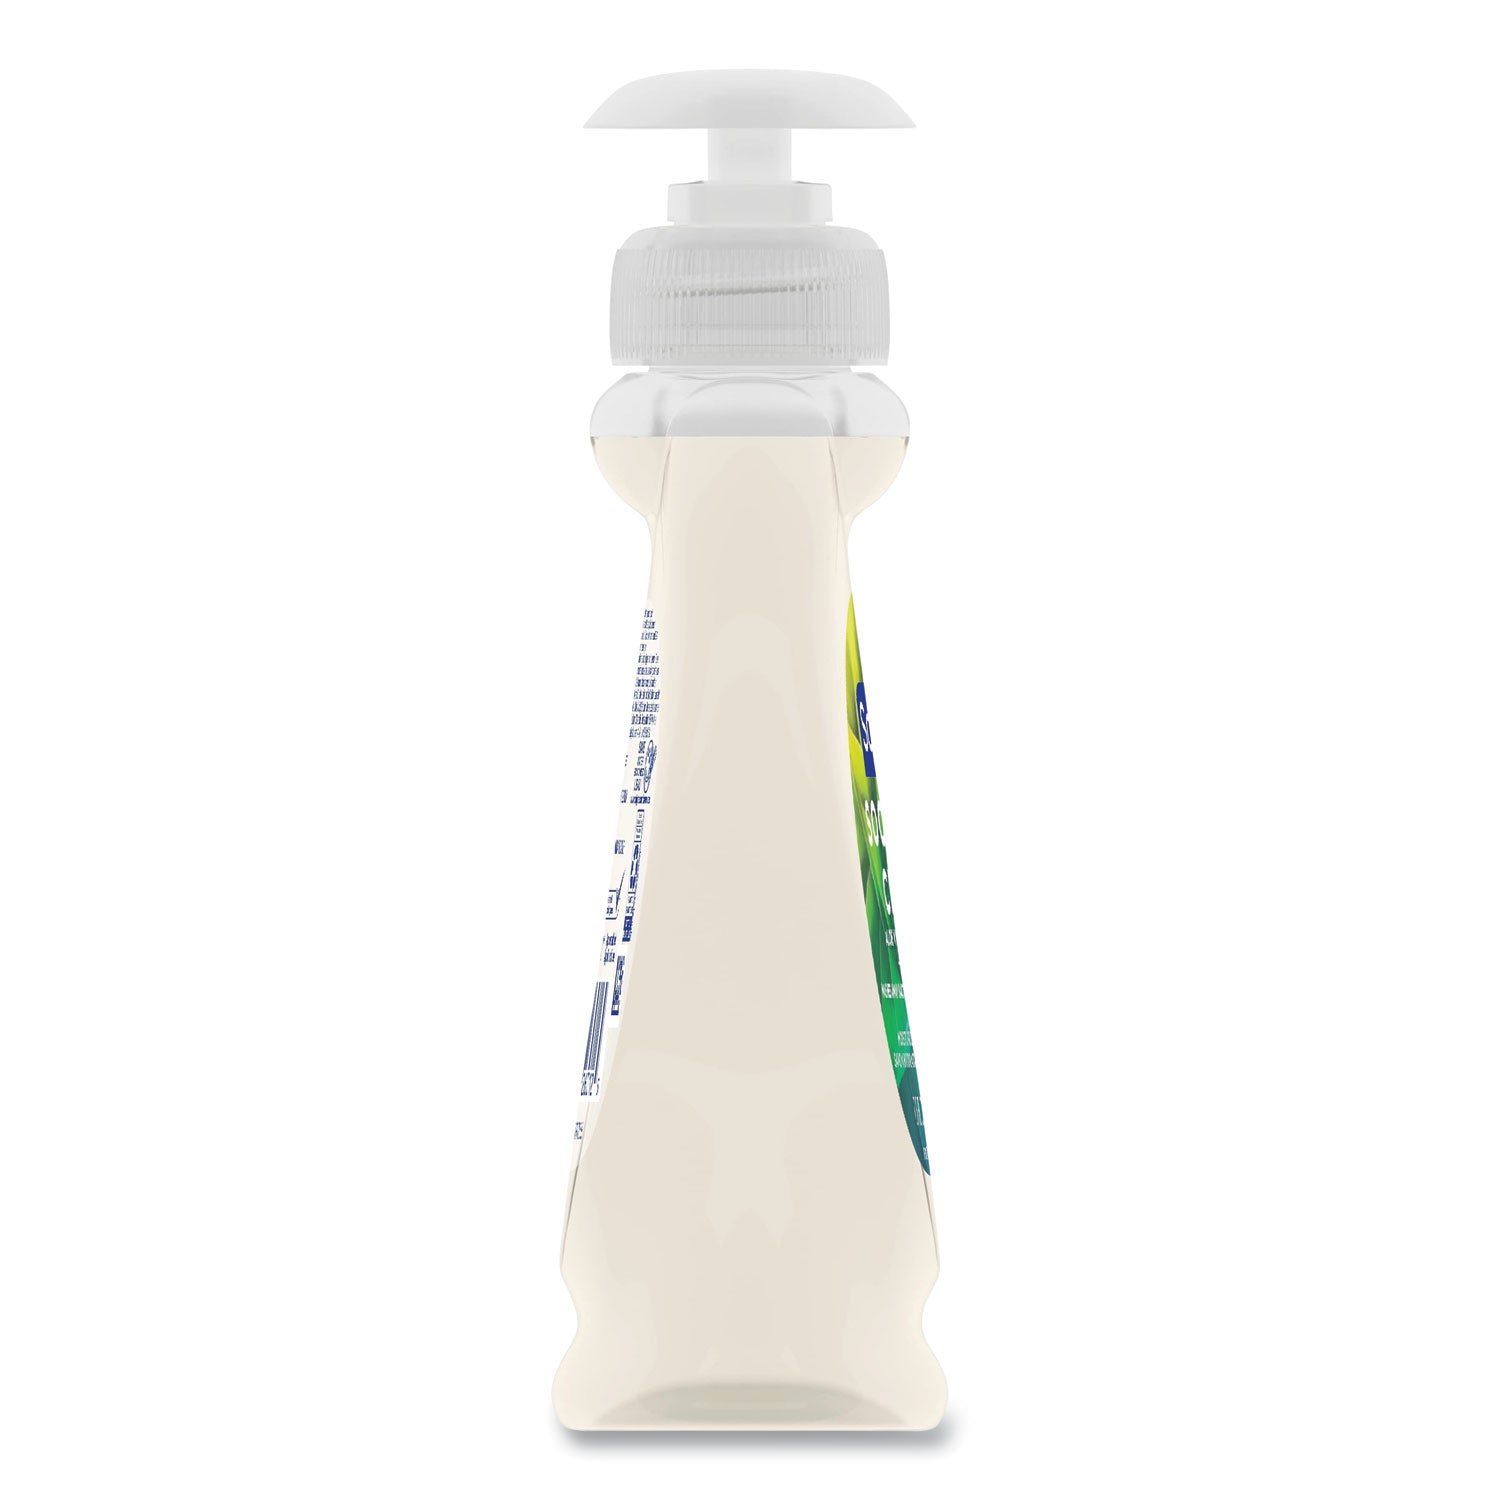 Liquid Hand Soap Pump with Aloe, Clean Fresh 7.5 oz Bottle - 5